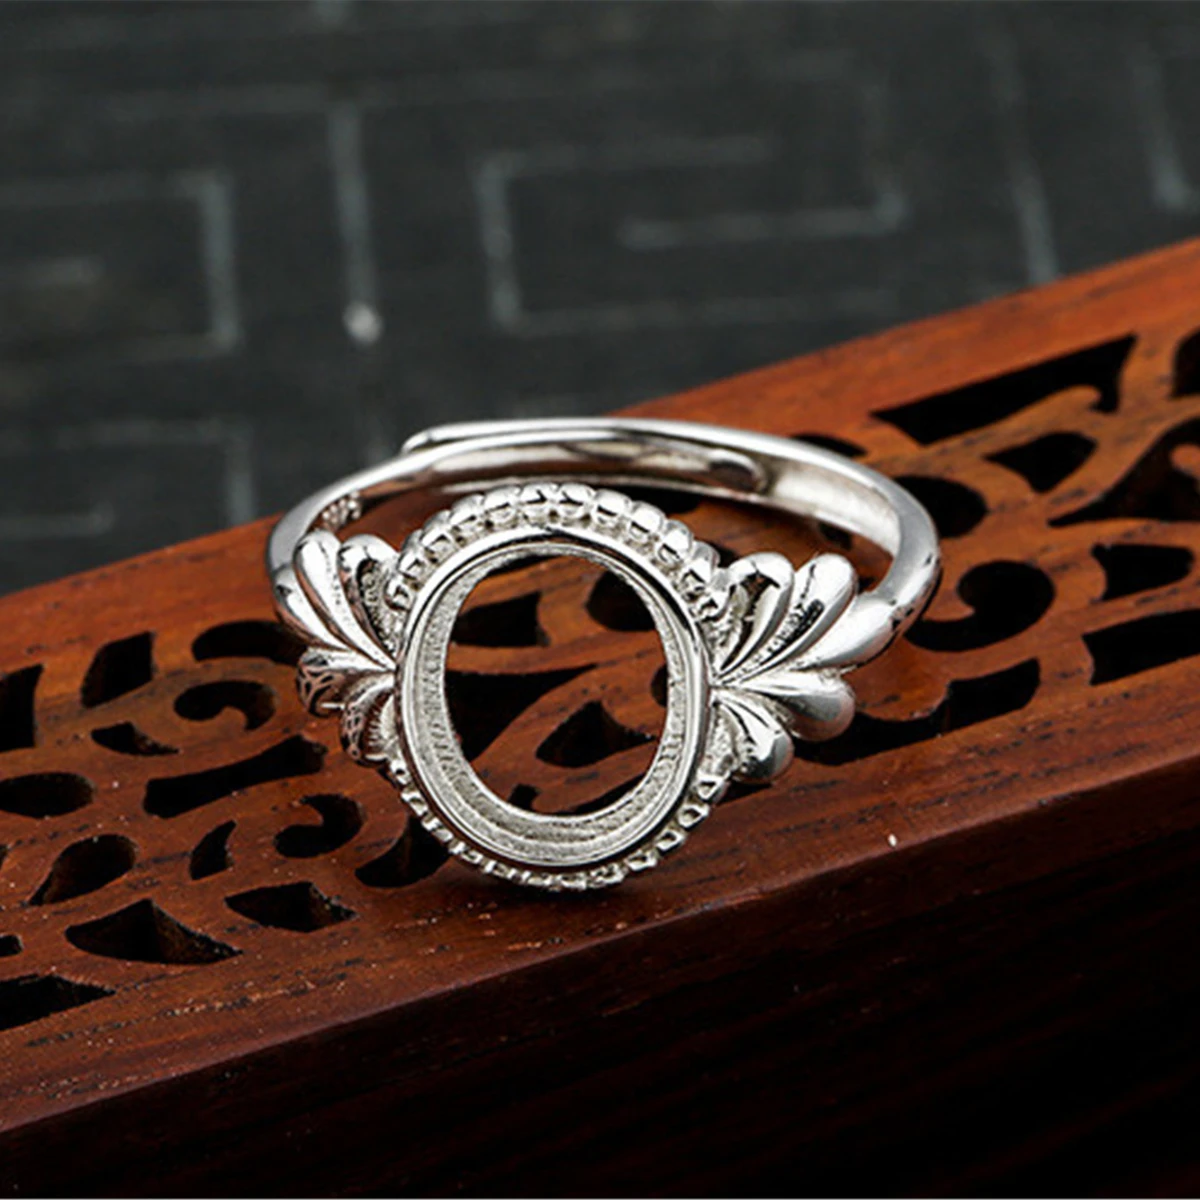 

Кольцо без рисунка (8x10 мм овальное без рисунка) регулируемое кольцо из стерлингового серебра с покрытием из белого золота серебро 925 пробы кольцо с оправой R1474B